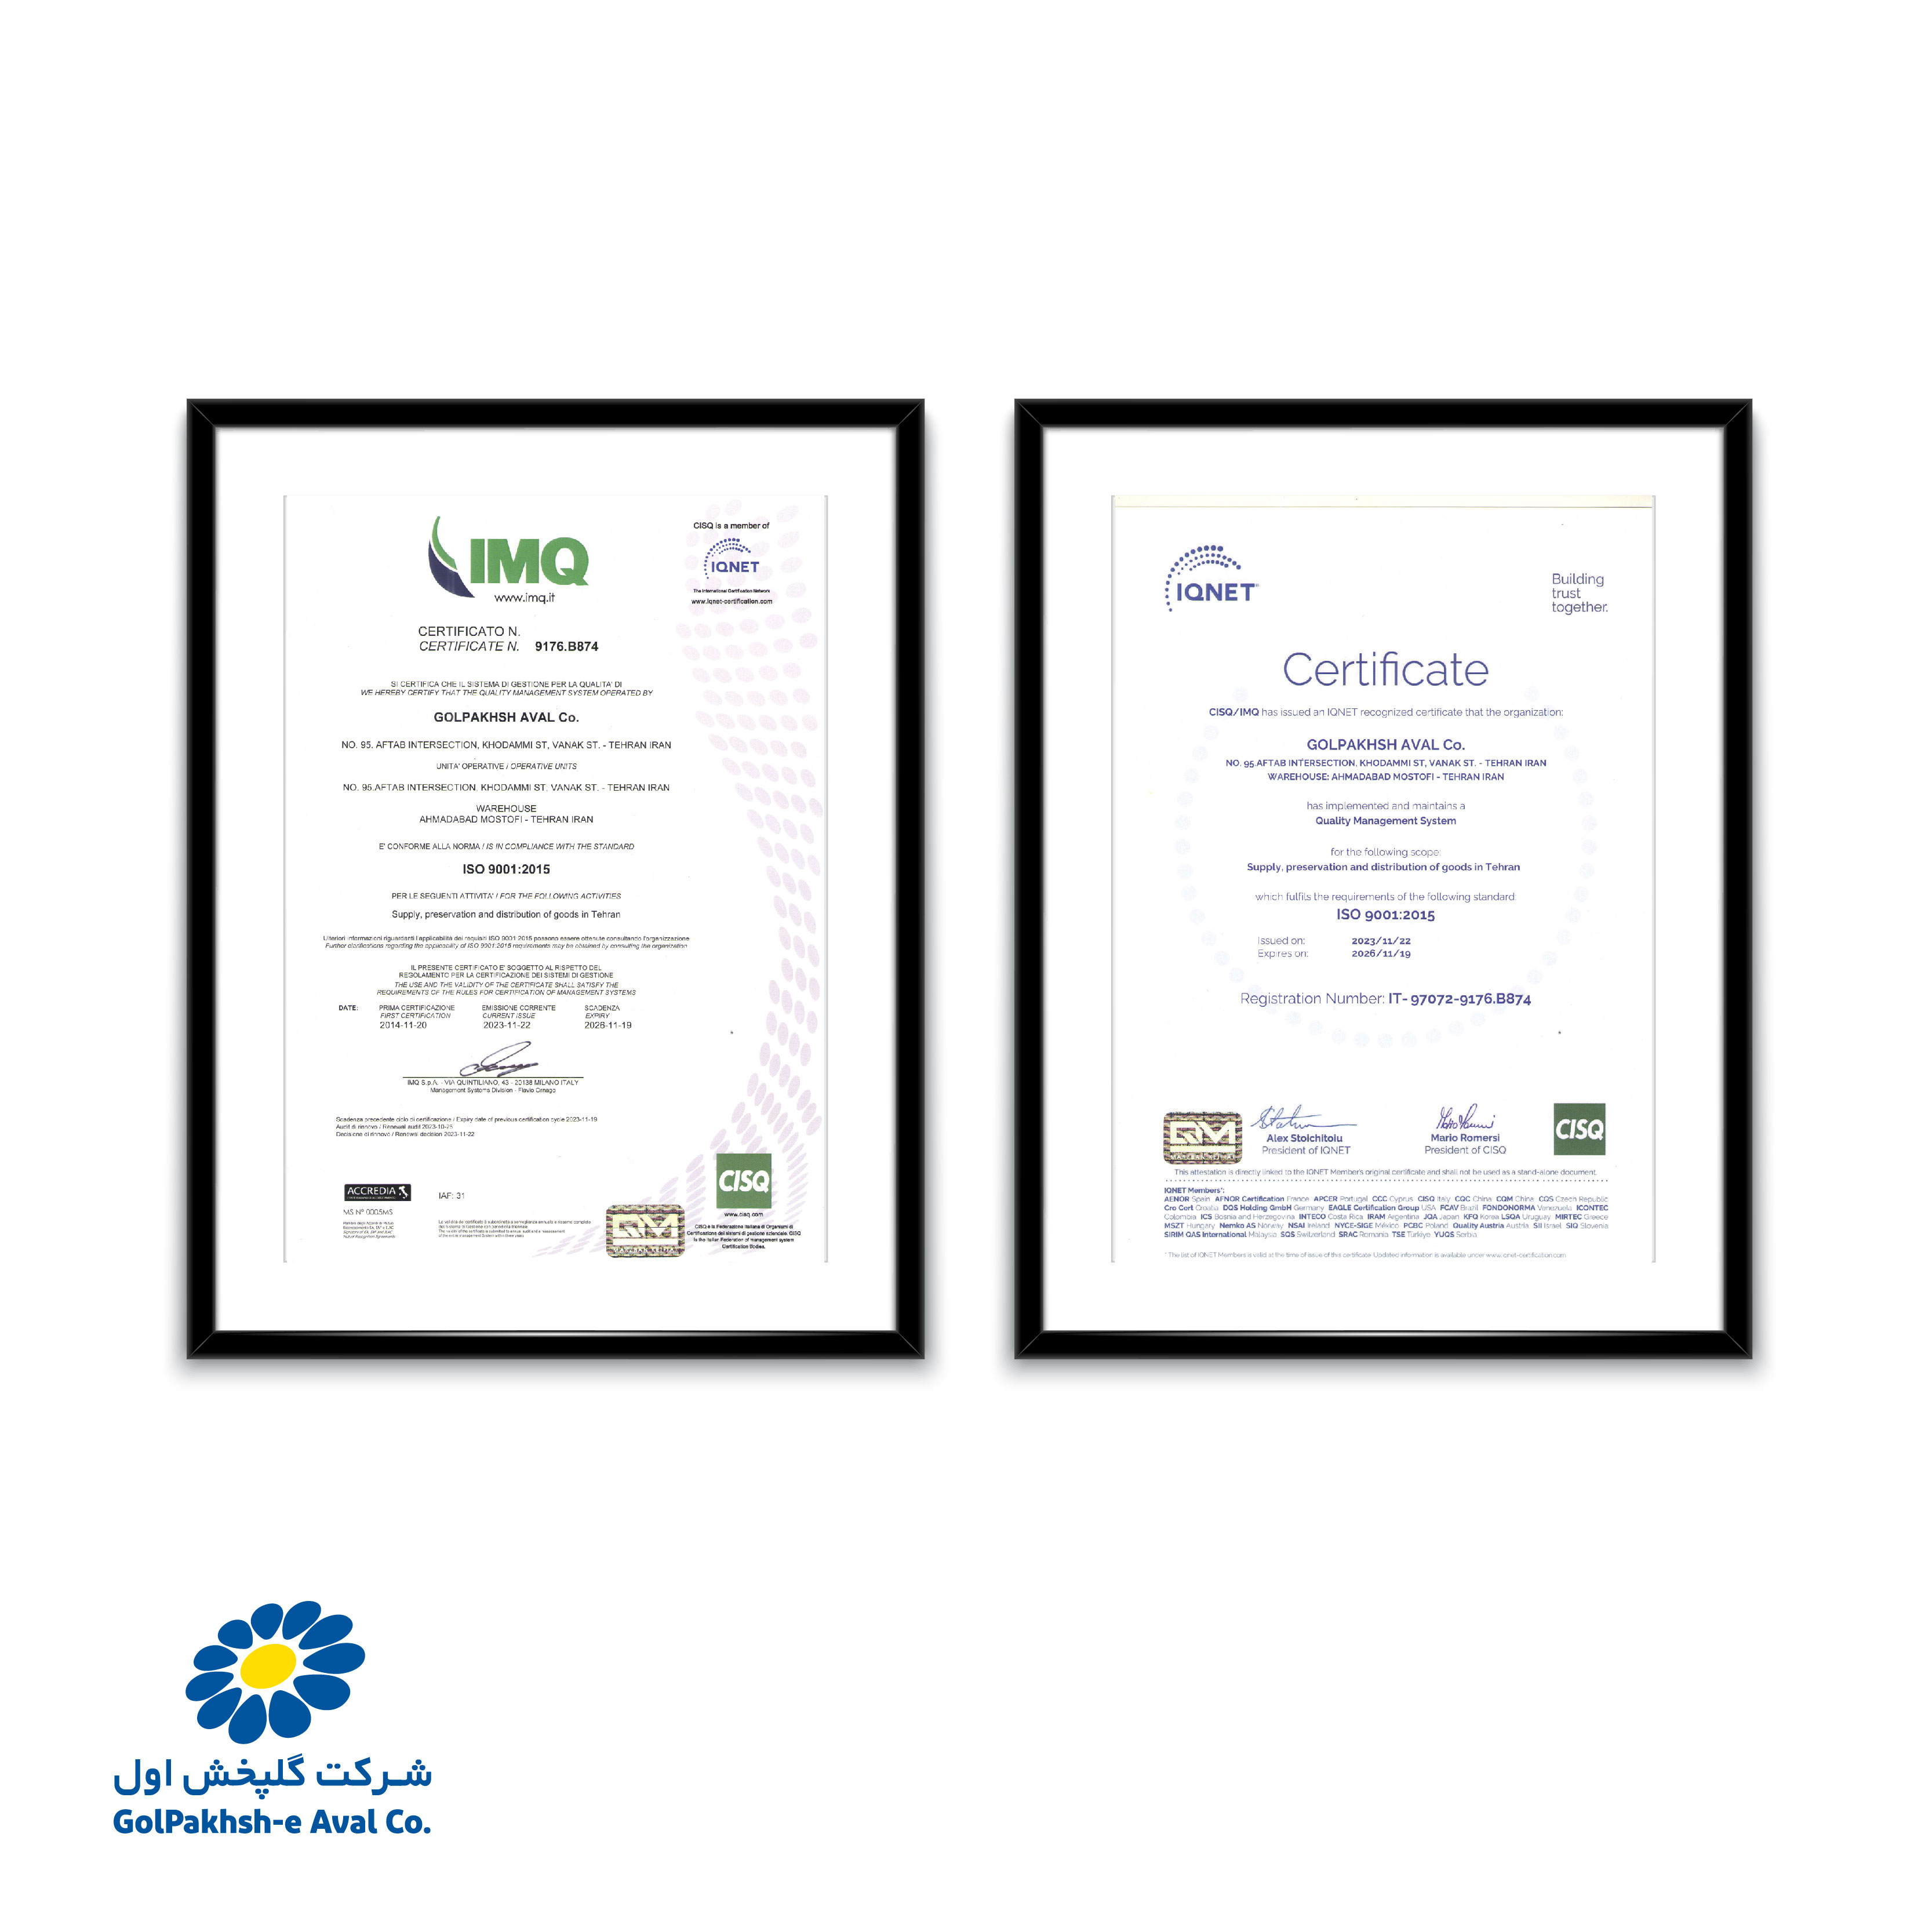 دریافت و تمدید گواهینامه استاندارد سیستم مدیریت کیفیت (ISO 9001:2015)